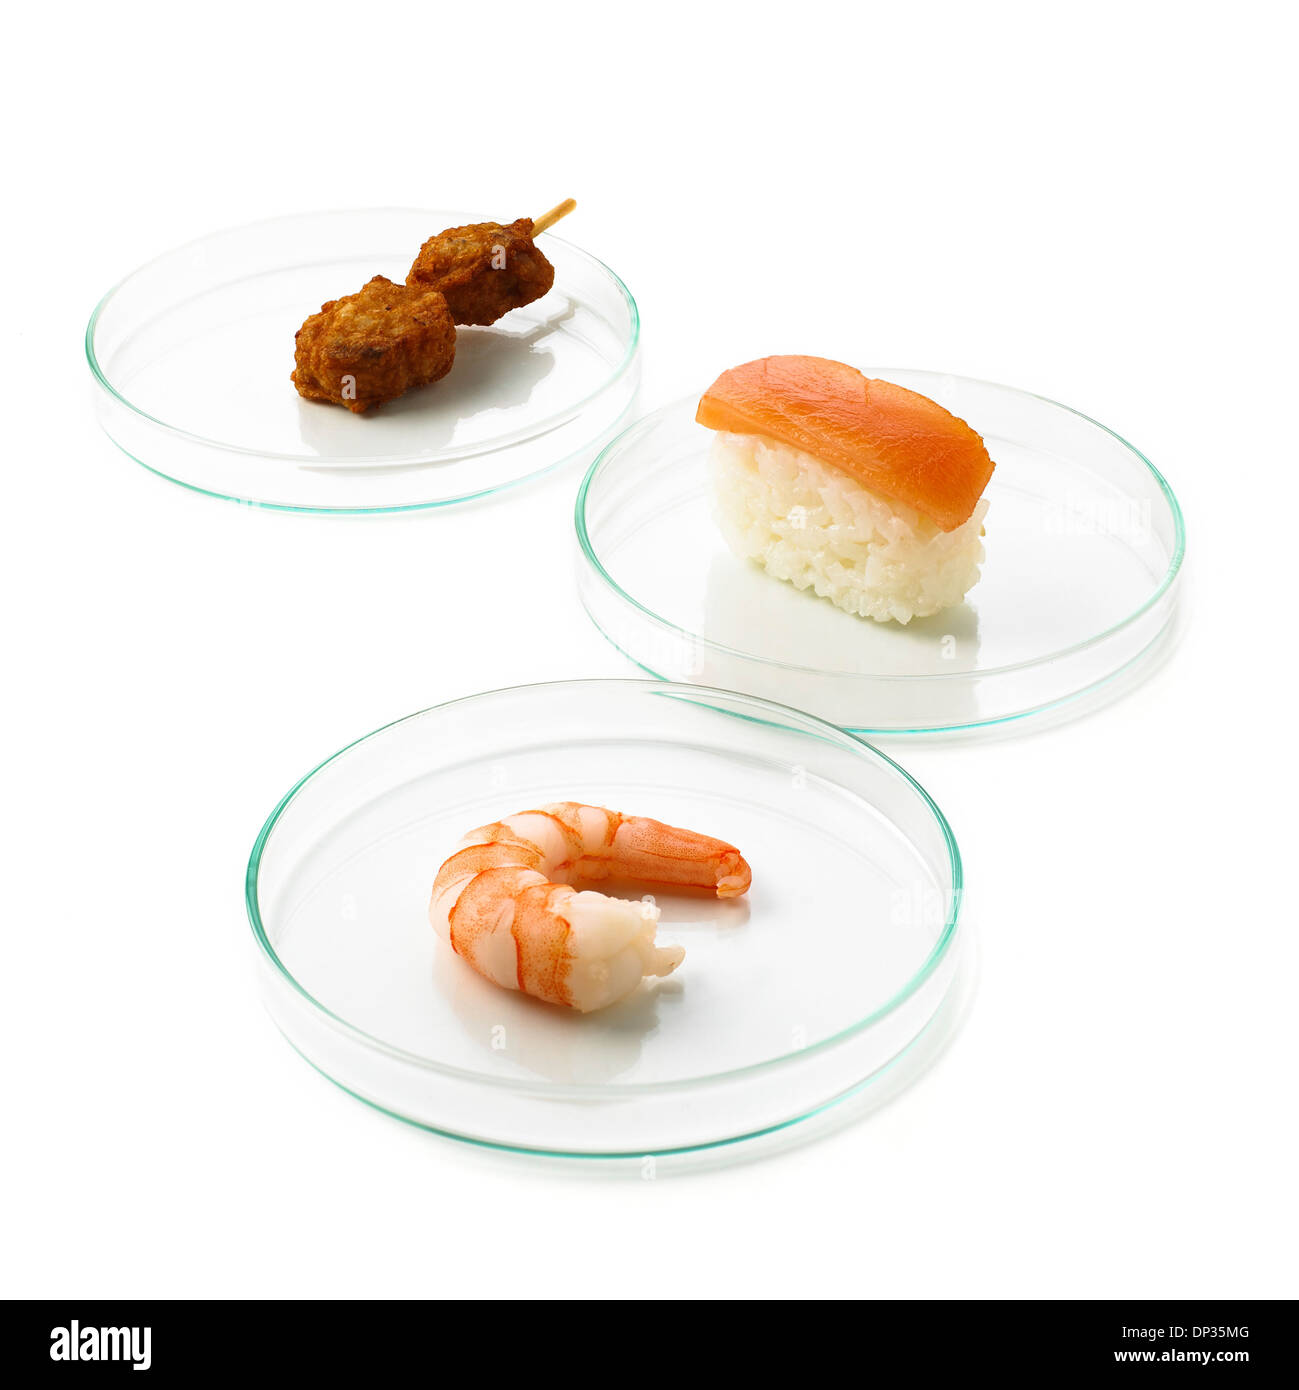 Test de l'alimentation, conceptual image Banque D'Images